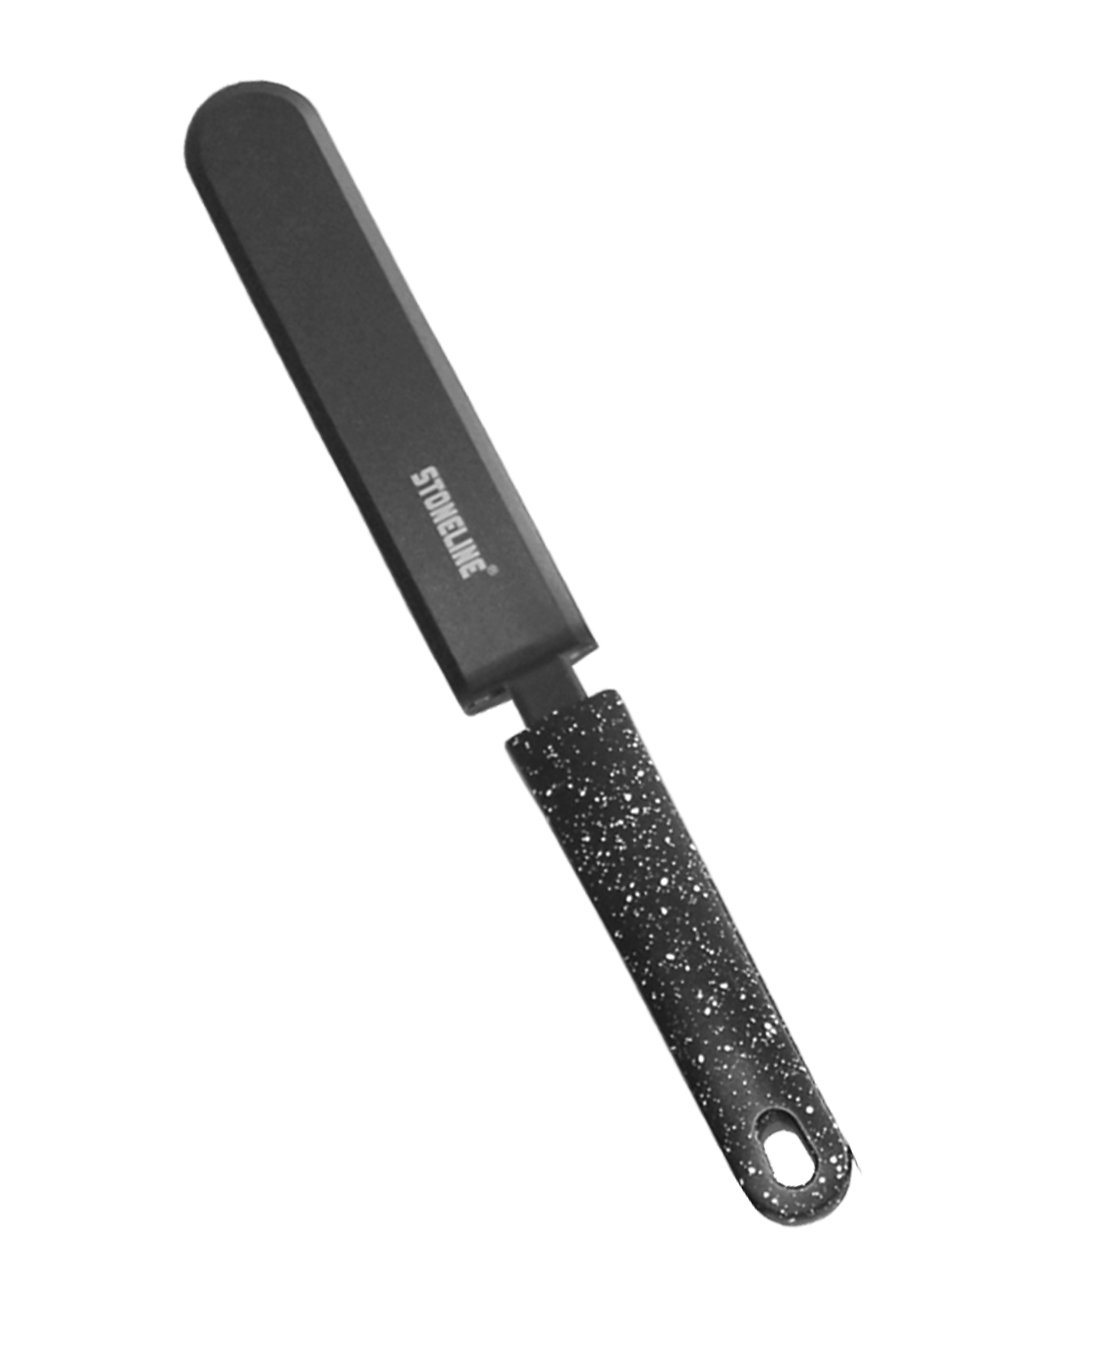 STONELINE® spatule avec support, plastique